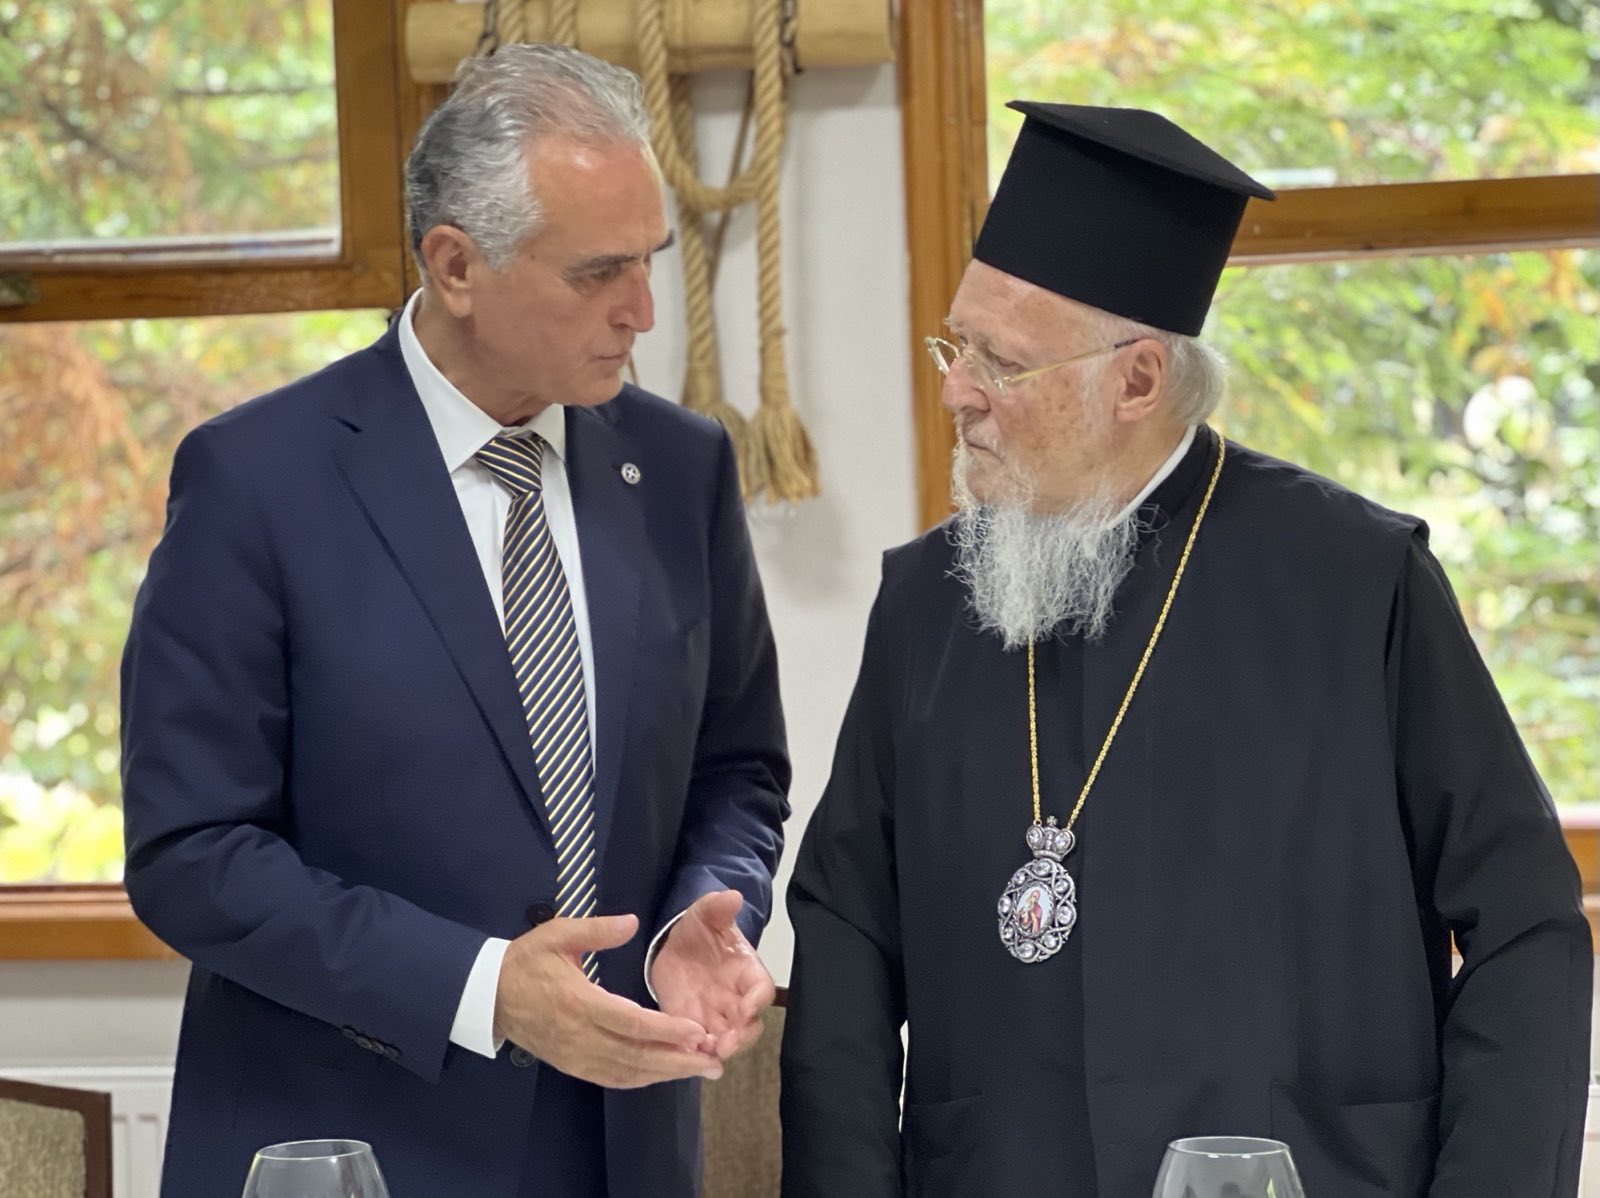 Ο βουλευτής Σάββας Αναστασιάδης εκπροσώπησε τη Βουλή των Ελλήνων στην Παναγία Σουμελά στον Πόντο